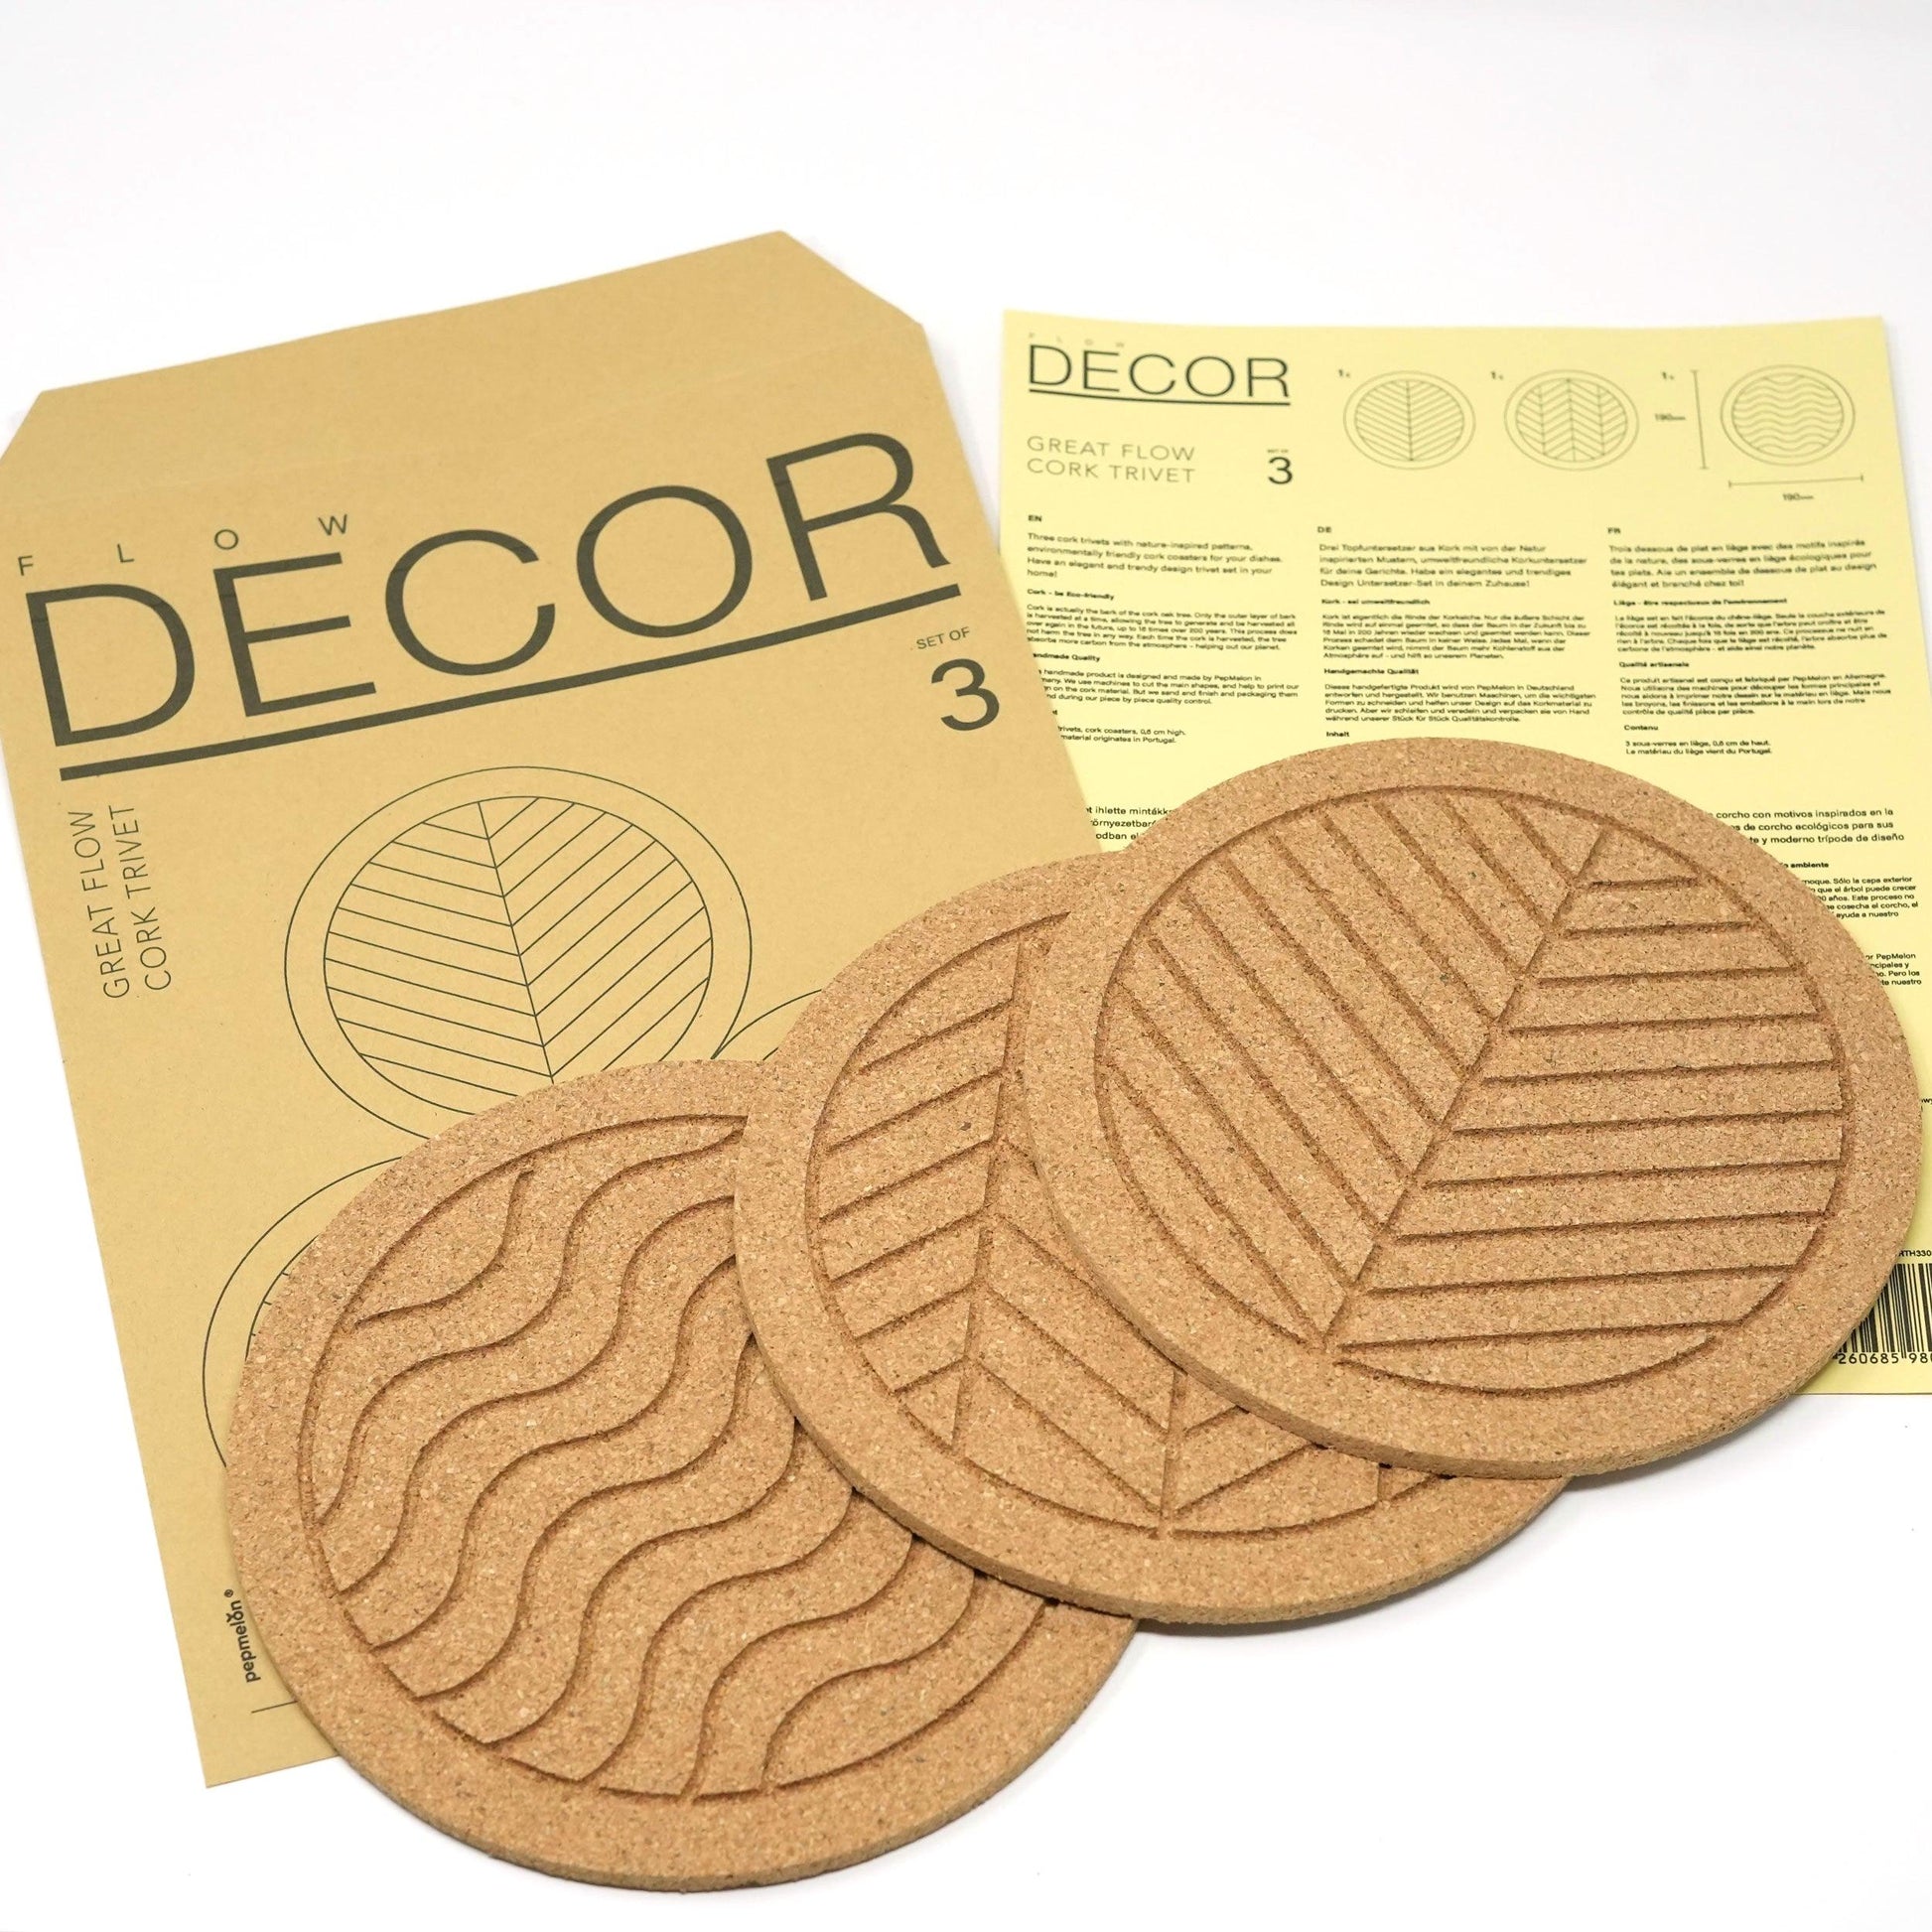 Great Flow - Cork trivet set of 3 pieces, 19 cm cork coasters, nature inspired design pot plates - PepMelon